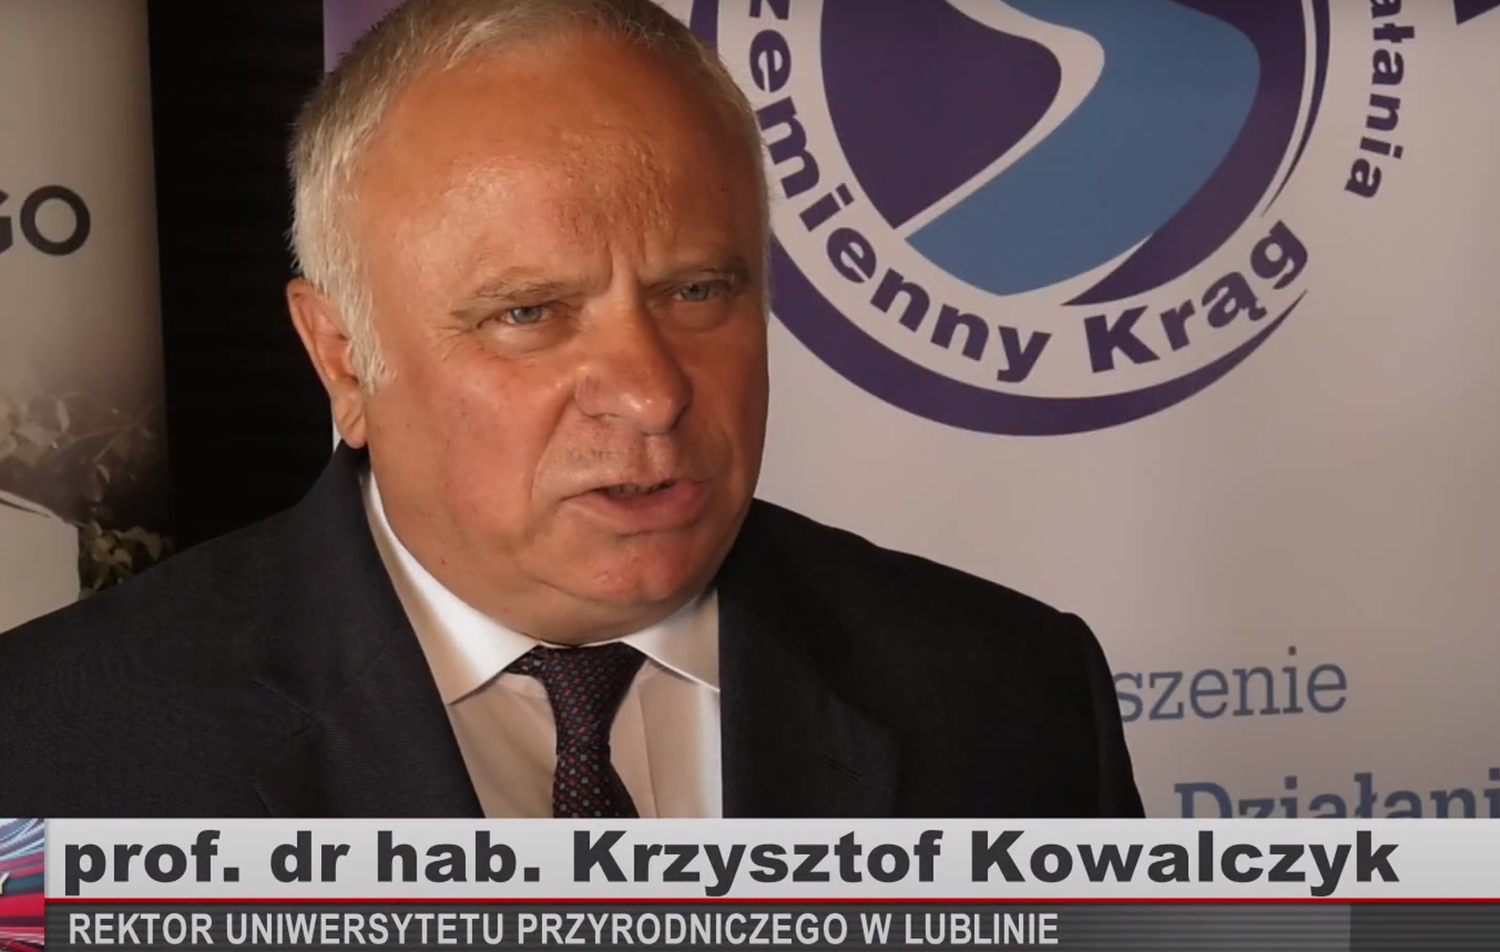 wywiad tv z Rekroerm Krzysztofem Kowalczykiem, w dole podpis, w tle logo partnera uczelni